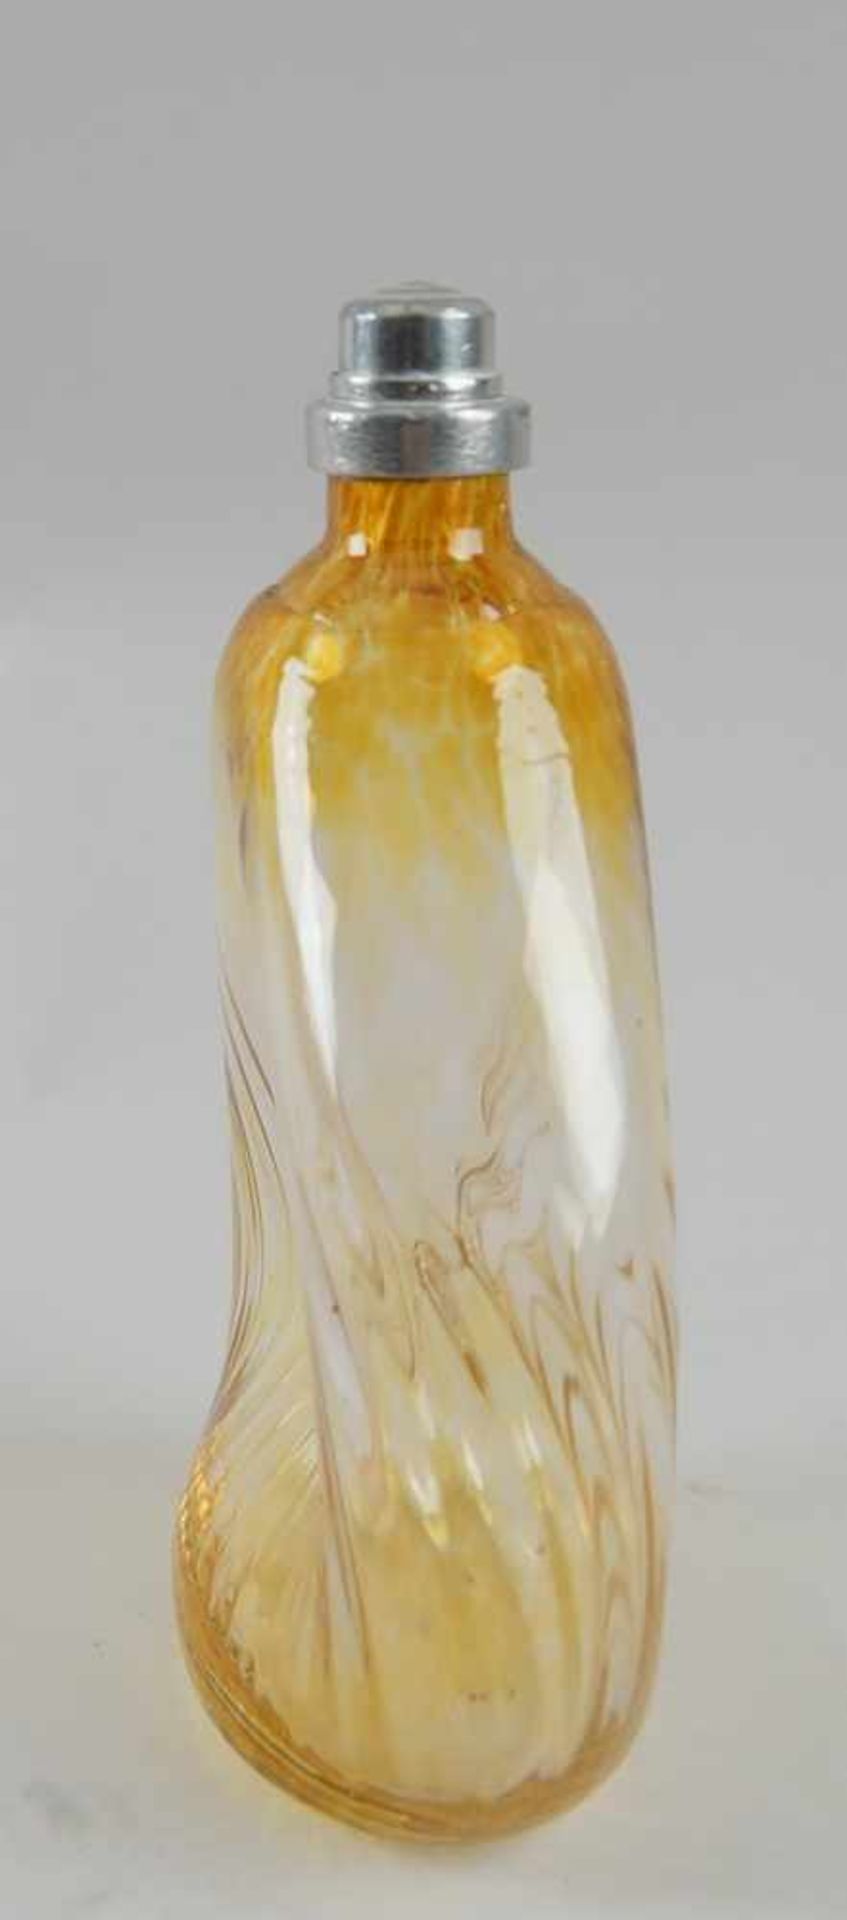 Gramsacher Nabelflasche, Tirol, ~ 1900, gelbliches Glas, H 18 cm - Bild 4 aus 7